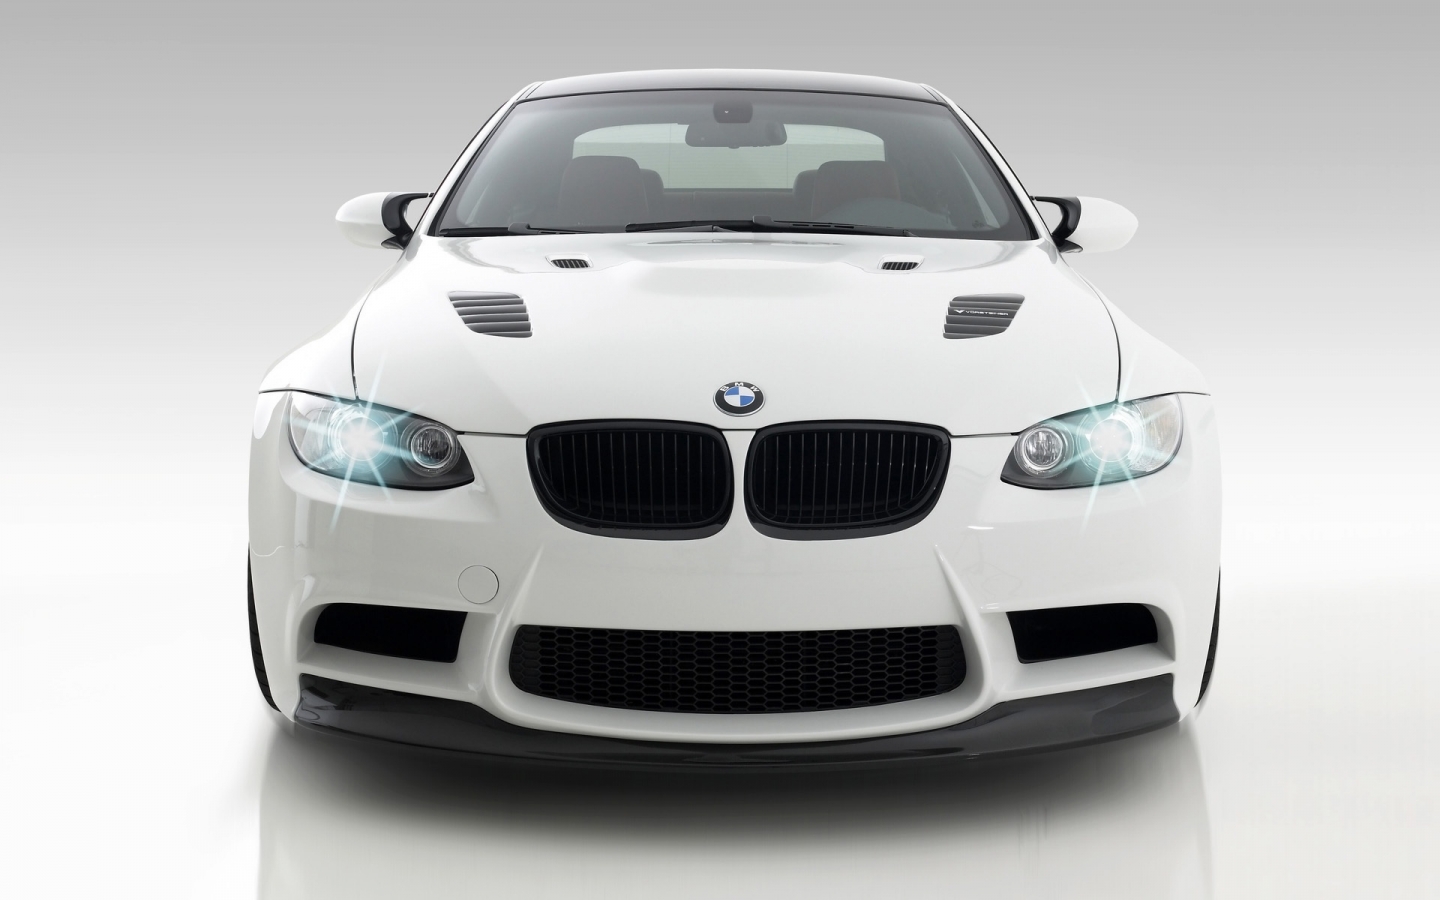 Vorsteiner GTS3 BMW M3 Front 2009 for 1440 x 900 widescreen resolution